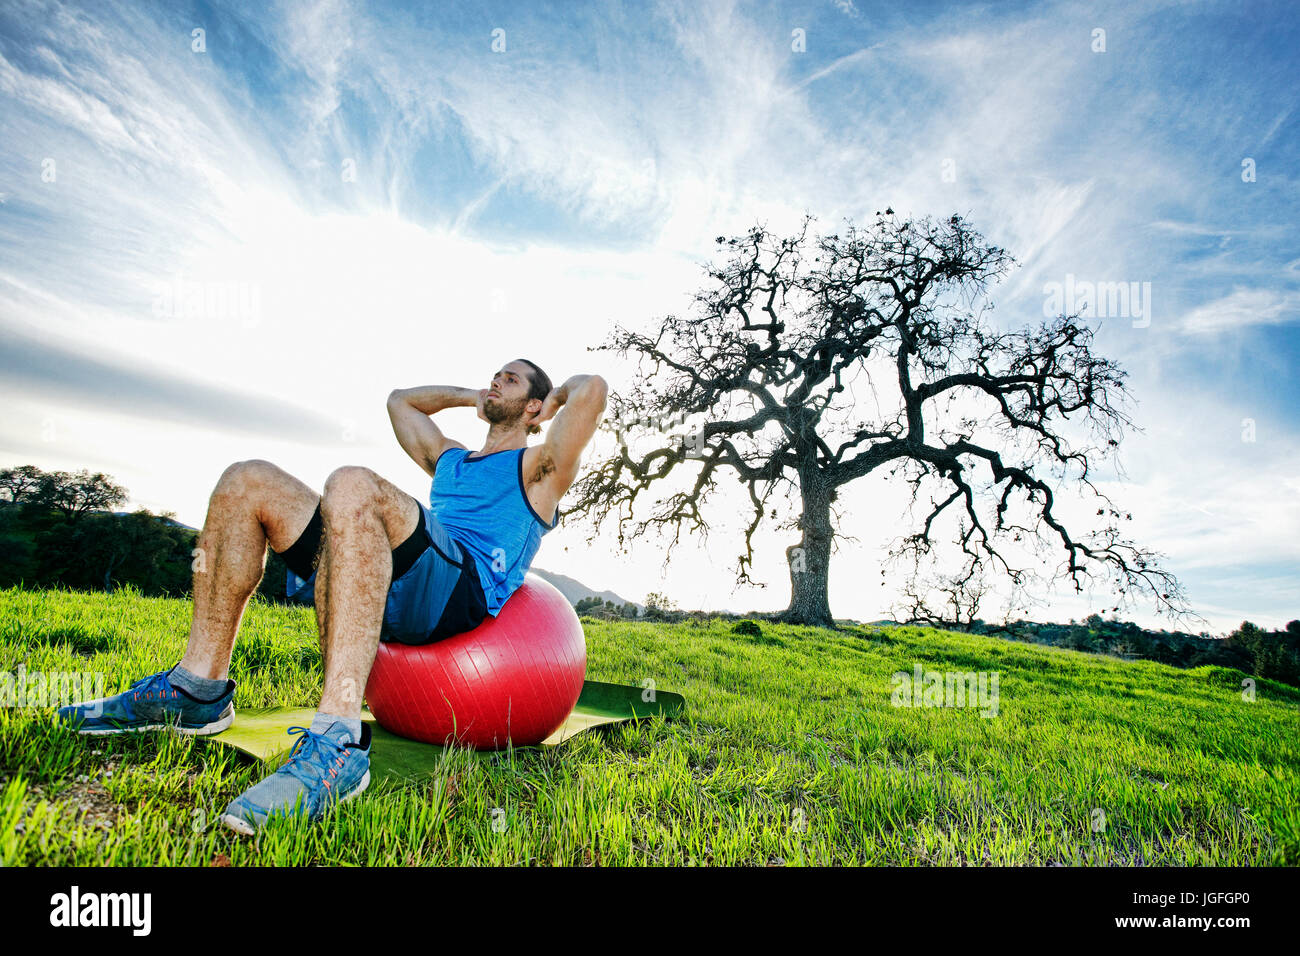 Uomo caucasico facendo sit ups sulla sfera di fitness in campo vicino ad albero Foto Stock